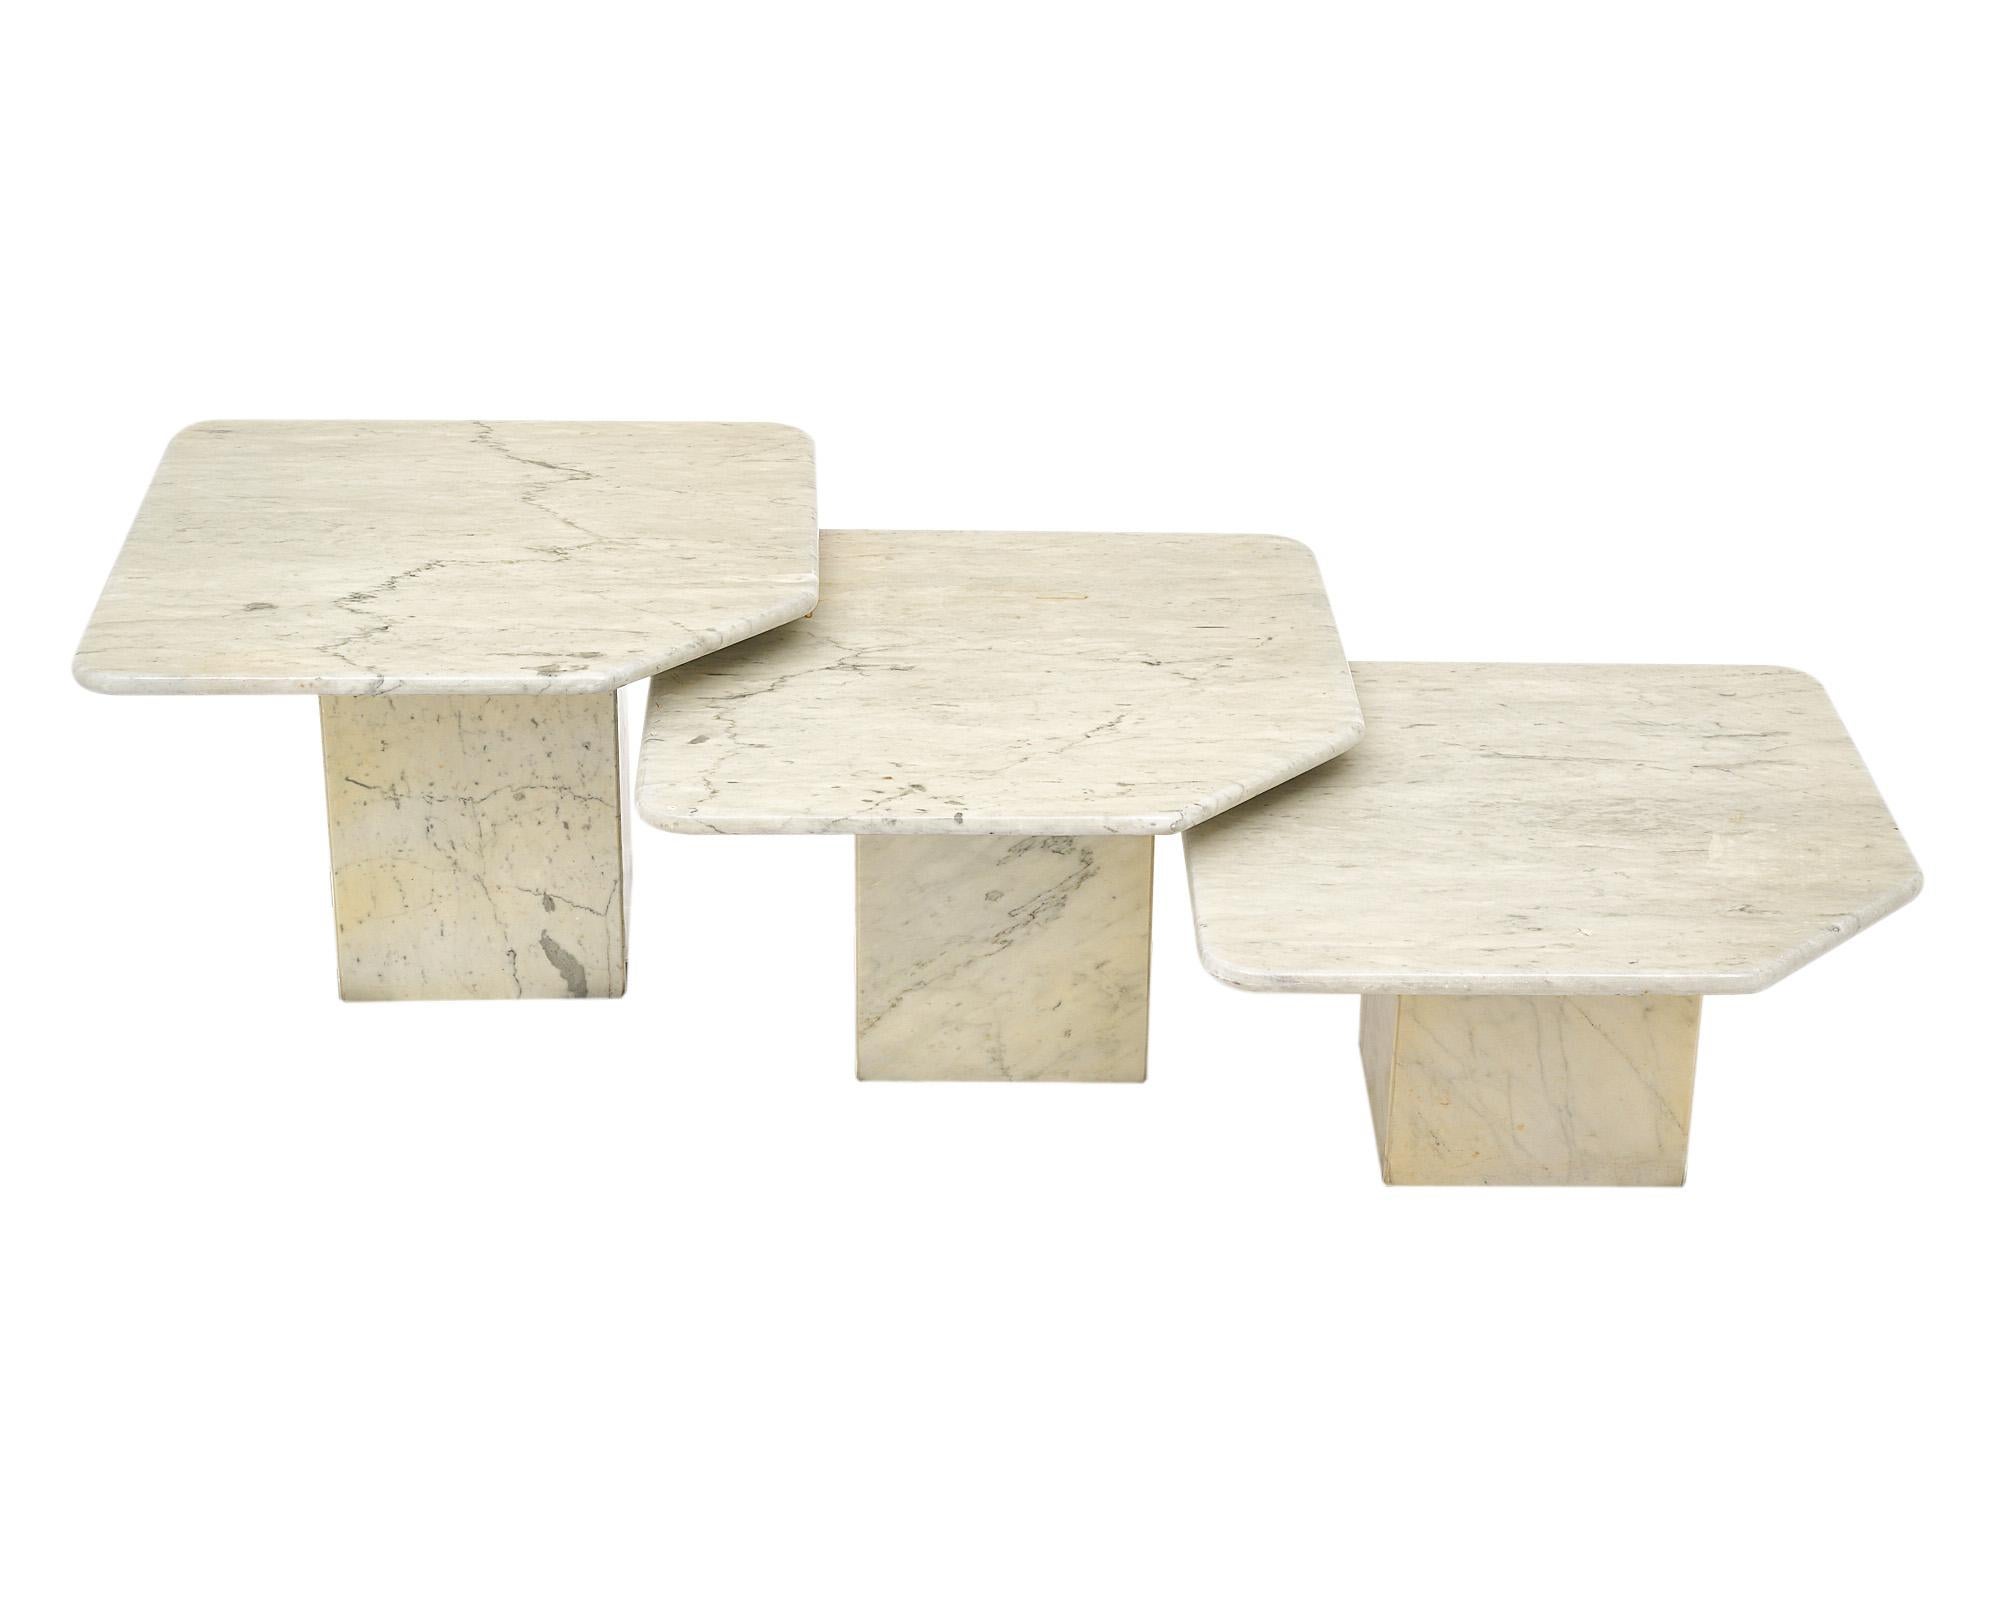 Set aus drei Nisttischen aus Carrara-Marmor. Jeder Tisch steht auf einem quadratischen Marmorsockel. Die Marmorplatten haben eine quadratische Form mit abgerundeten Ecken und sind jeweils mit einer abgeschnittenen Ecke versehen, die sowohl grafisch